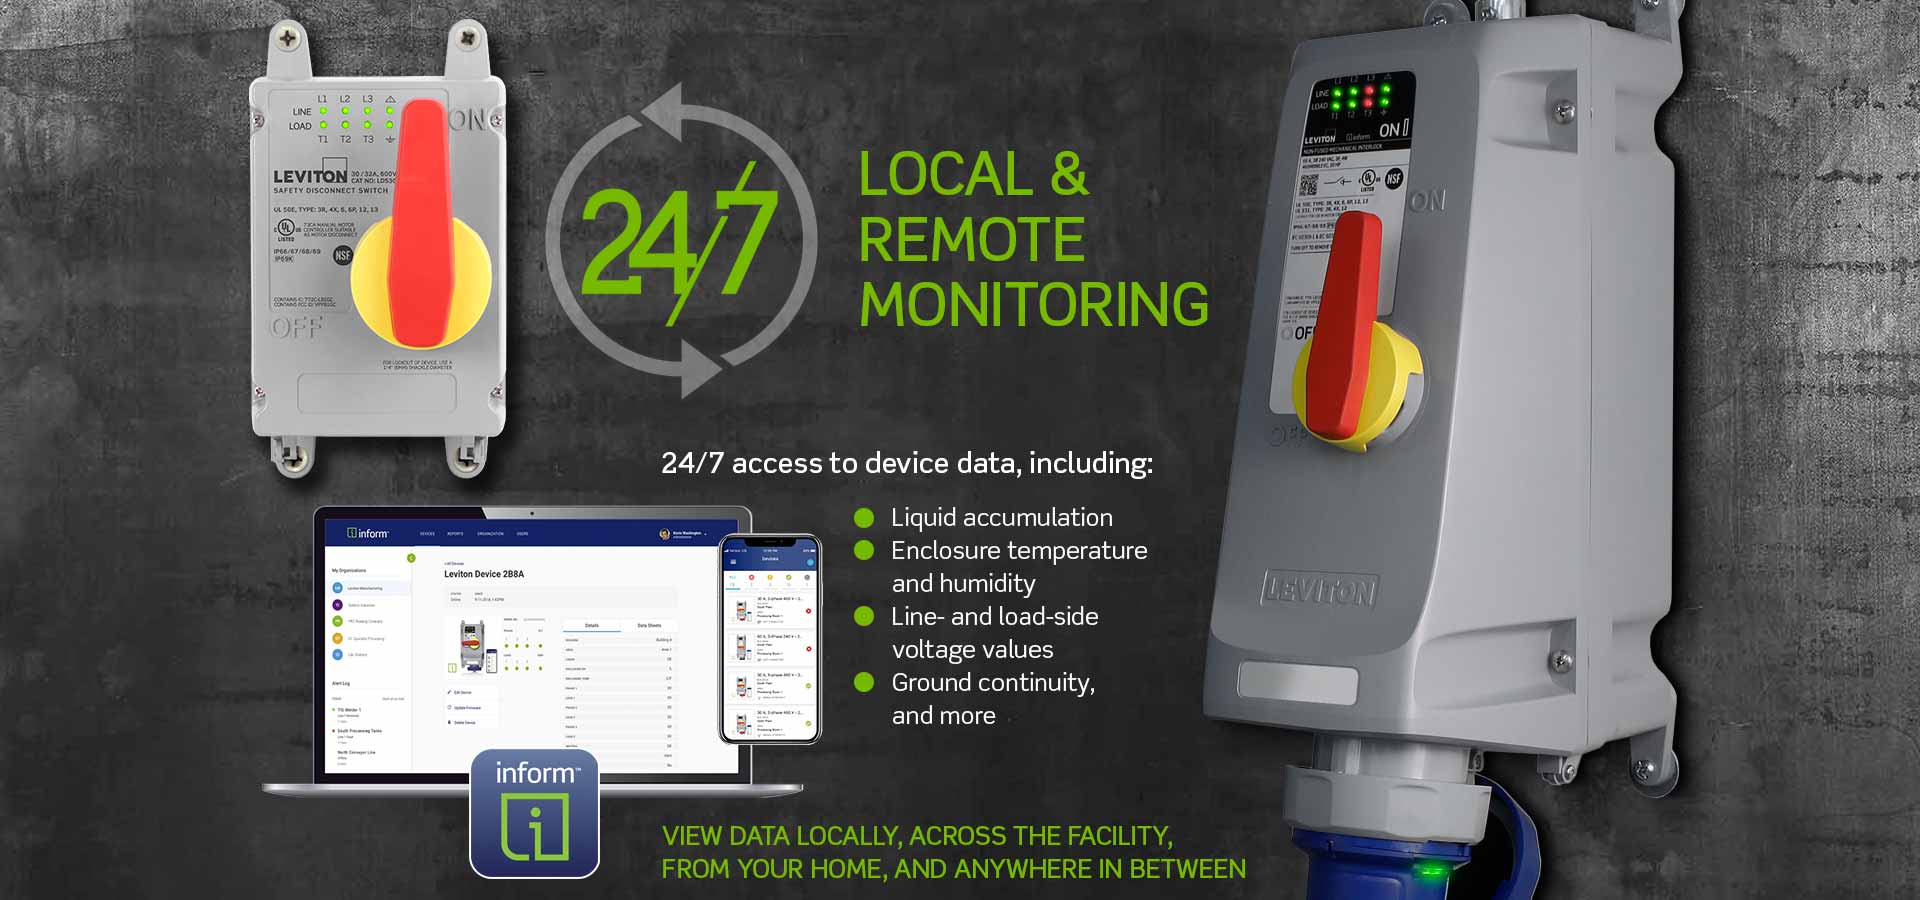 Monitorización local y remota24/7 : 24/7 accesos a los datos del producto, incluida la acumulación de líquido, la temperatura y humedad de la caja, los valores de voltaje del lado de la línea y la carga, la continuidad de la conexión a tierra y mucho más. Vea los datos en forma local en todas las instalaciones desde su hogar y en cualquier lugar intermedio